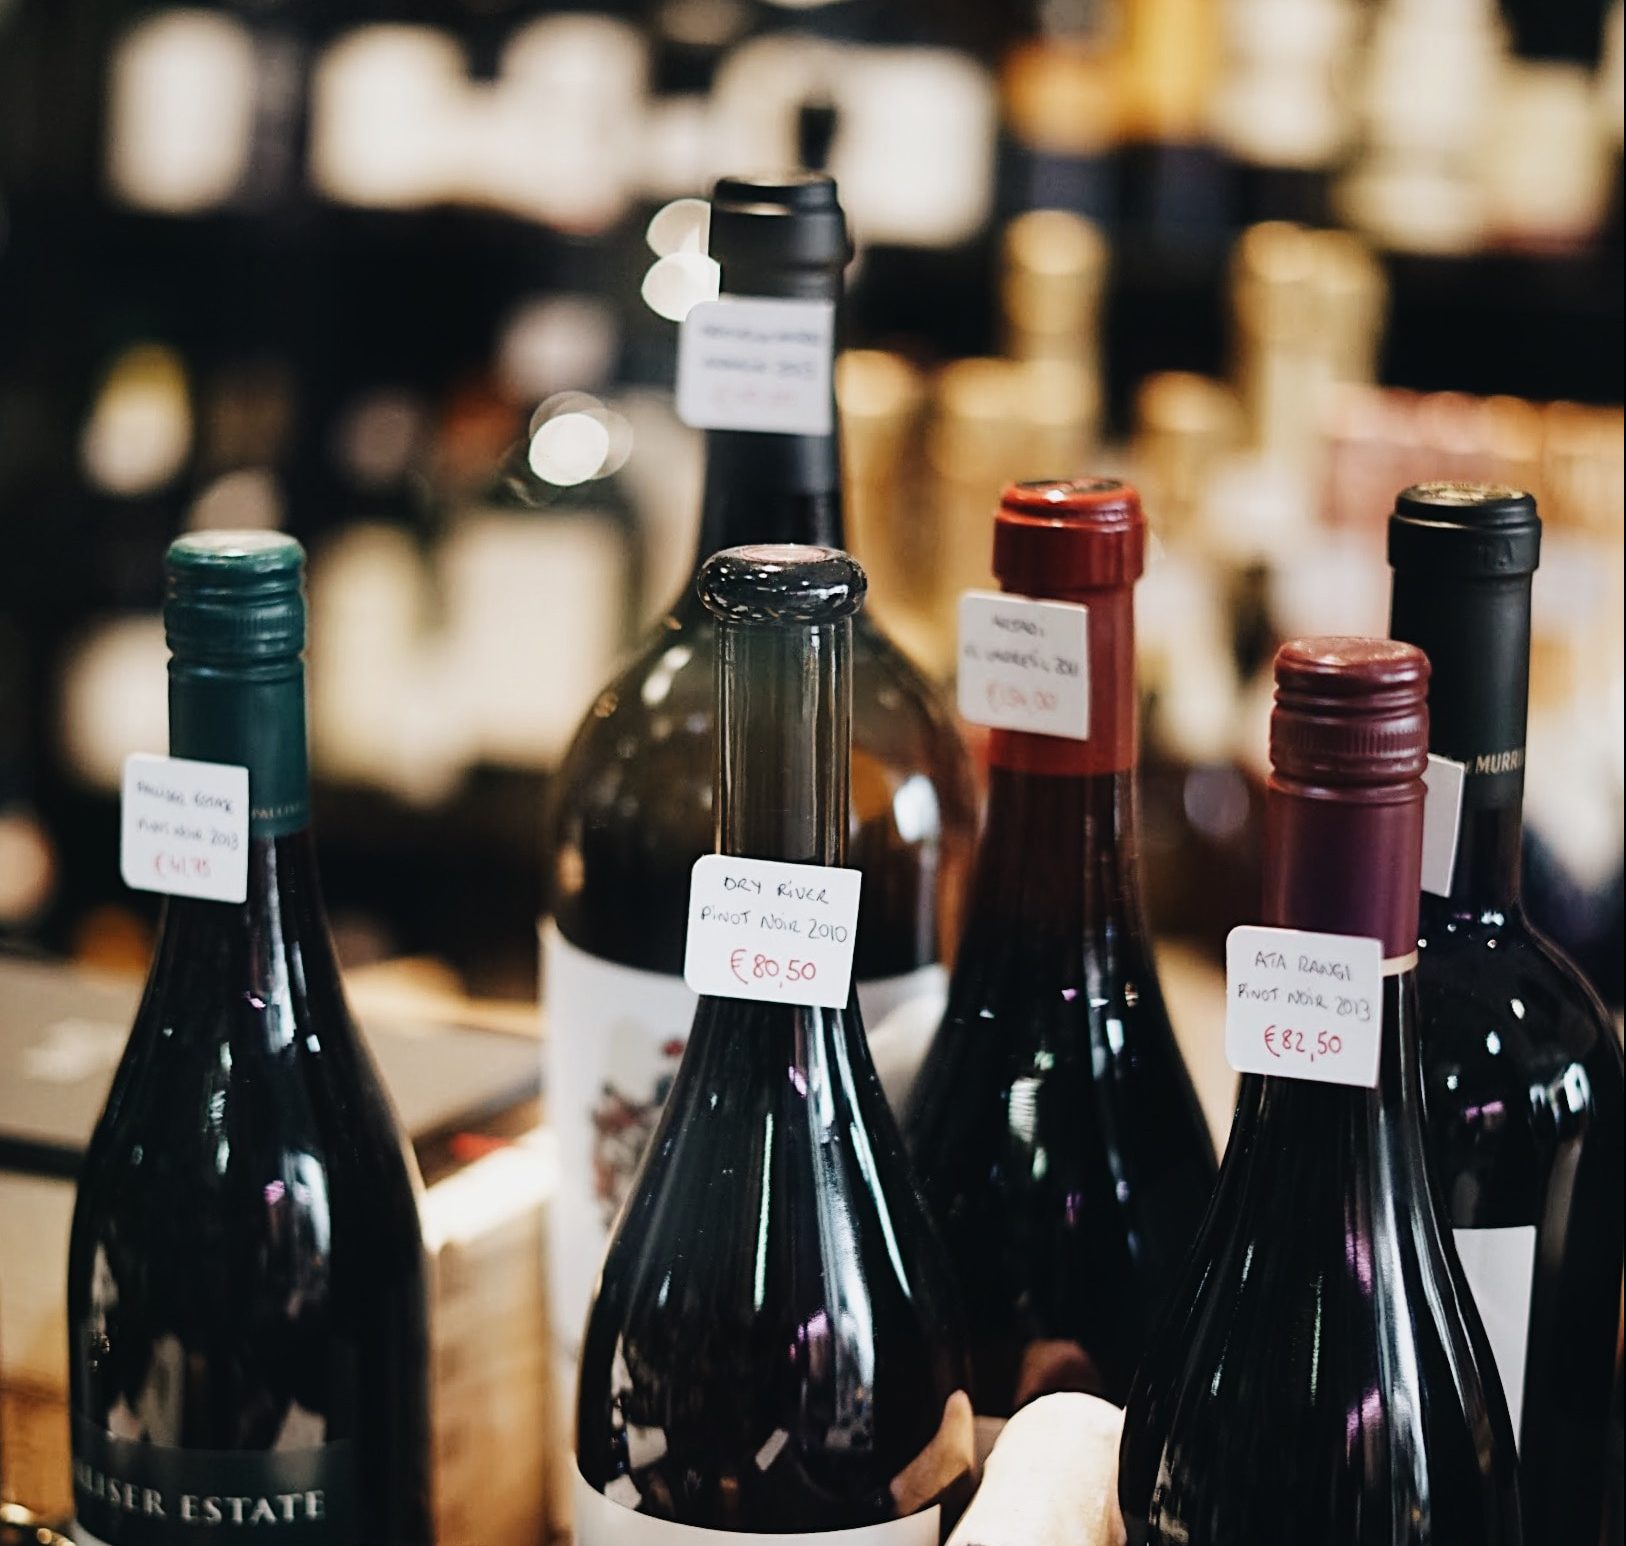 wijn uit de supermarkt - supermarkt wijn - beste supermarkt wijn 2019 - goede wijn albert heijn - goede wijn jumbo - goede wijn plus - wijn kiezen supermarkt - beste rode wijn jumbo - beste rode wijn albert heijn - goede rode wijn dirck III